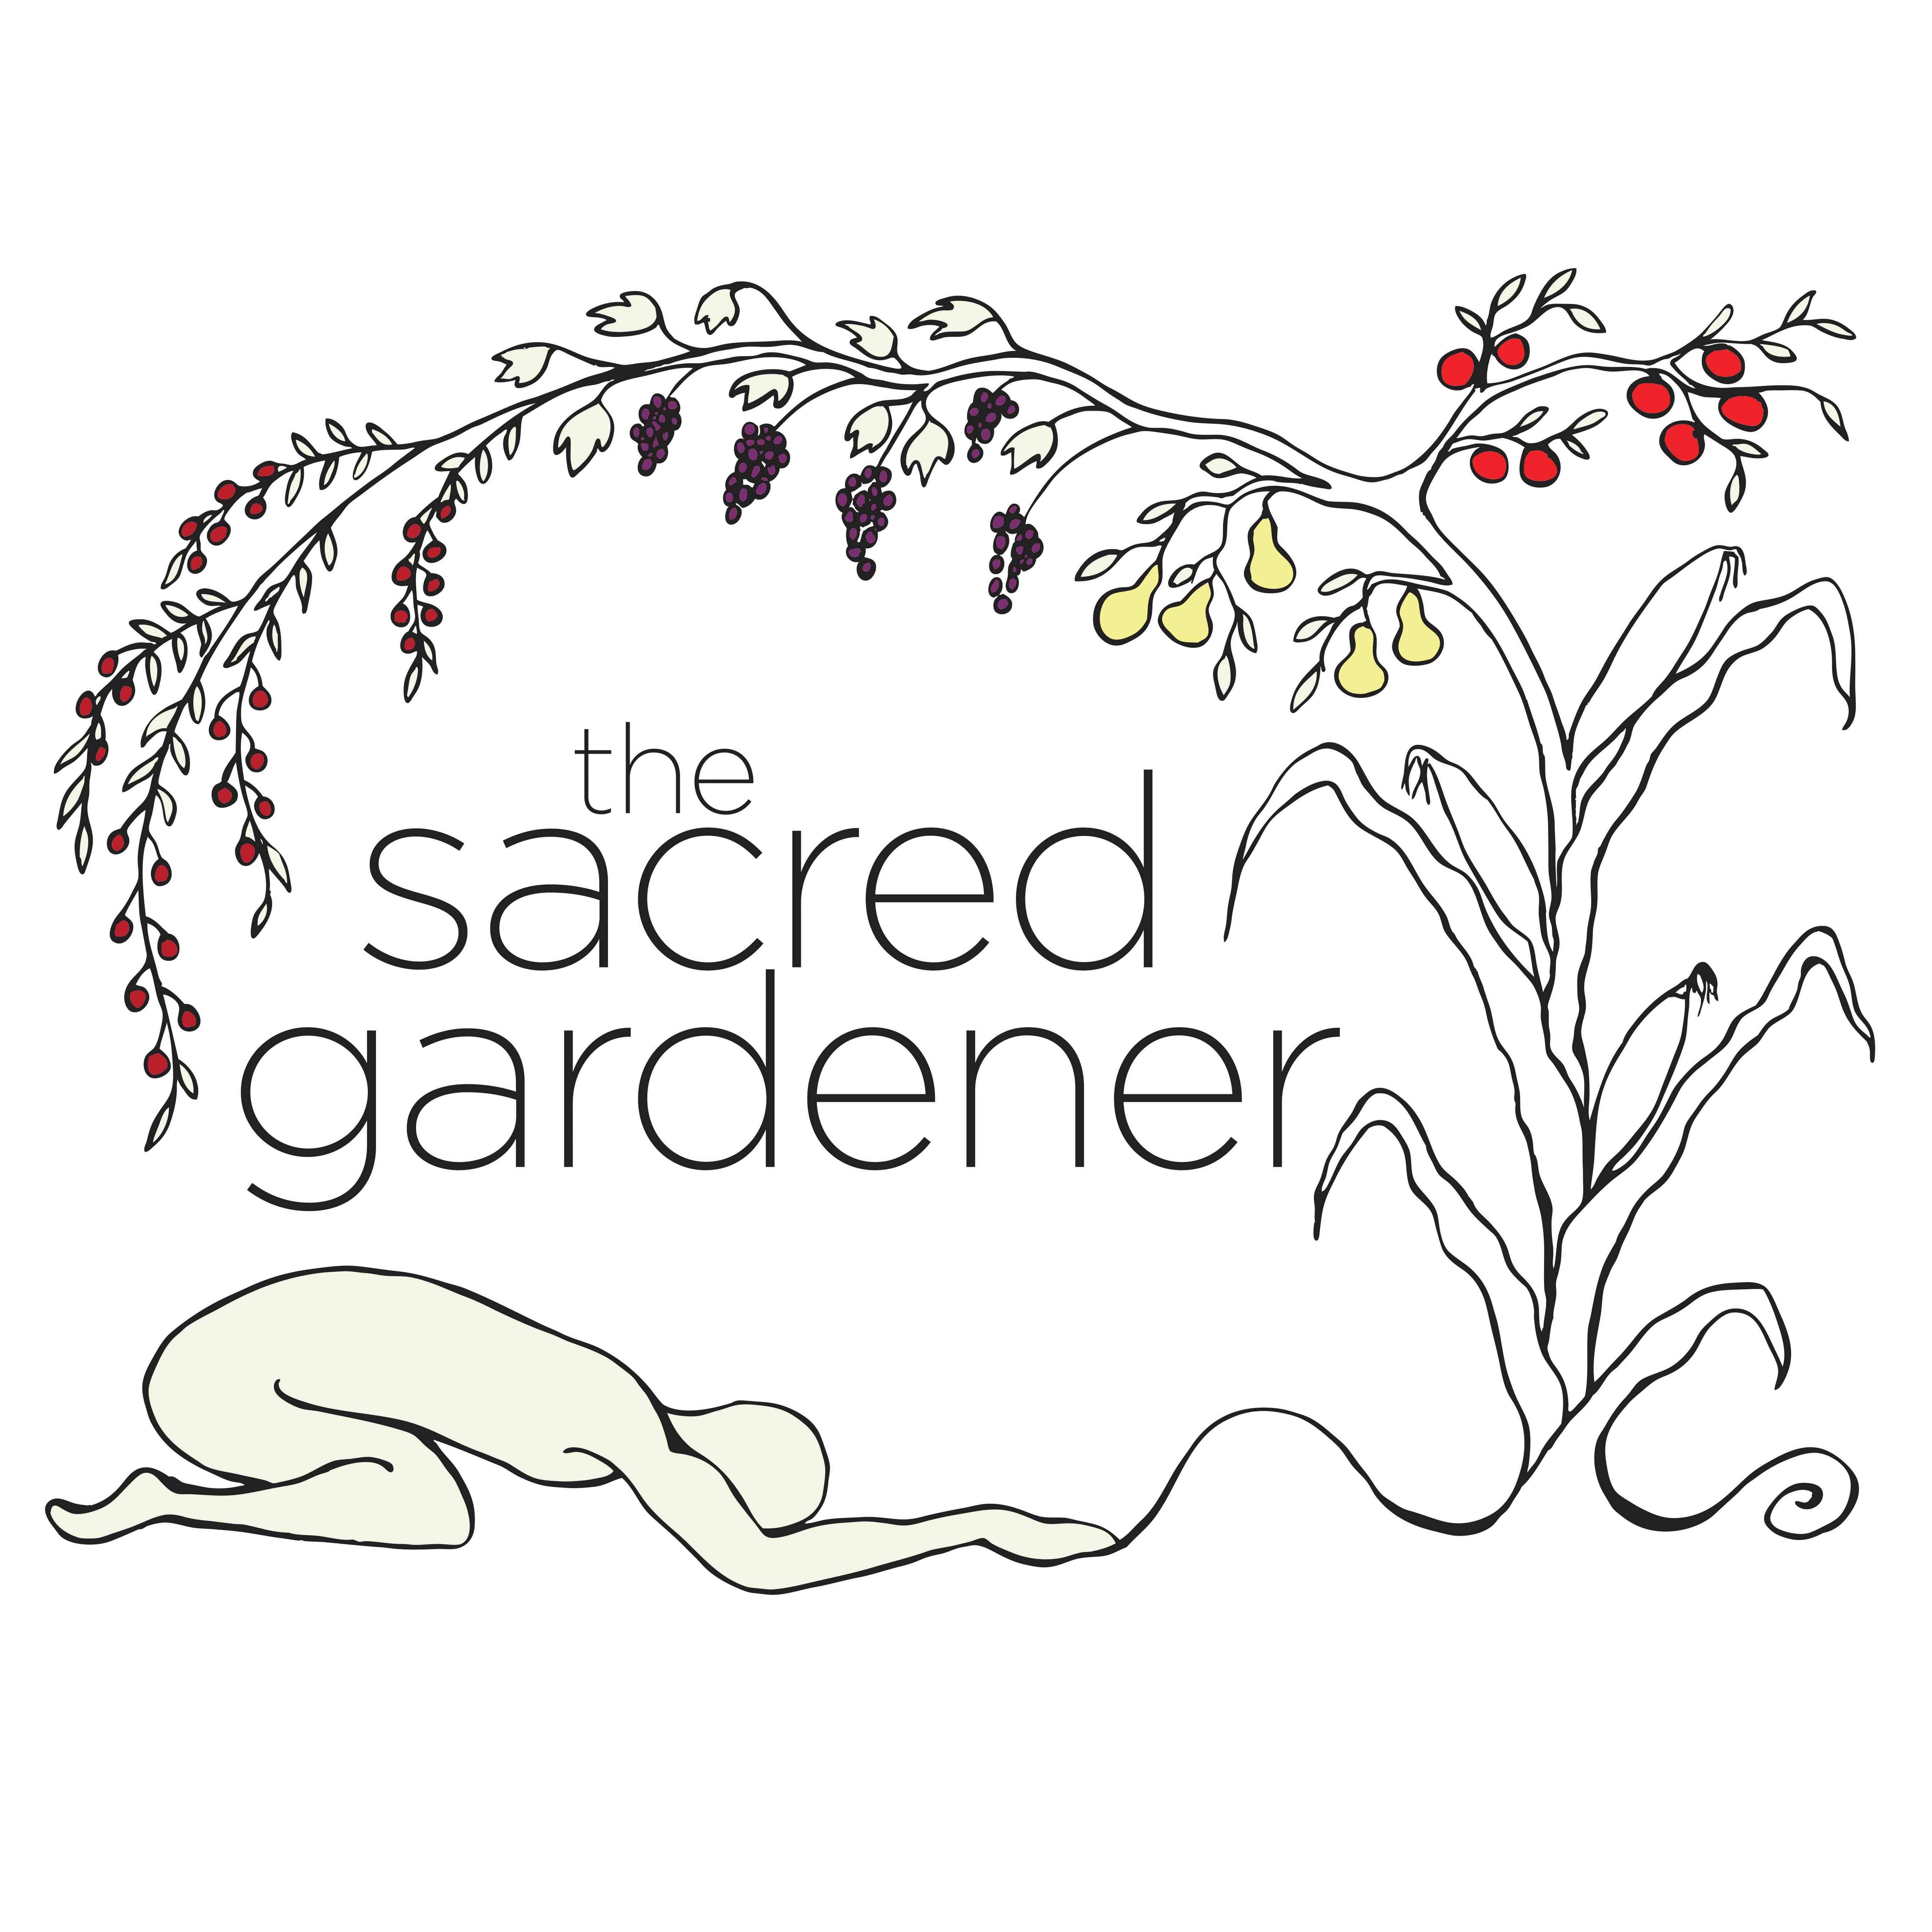 The Sacred Gardener